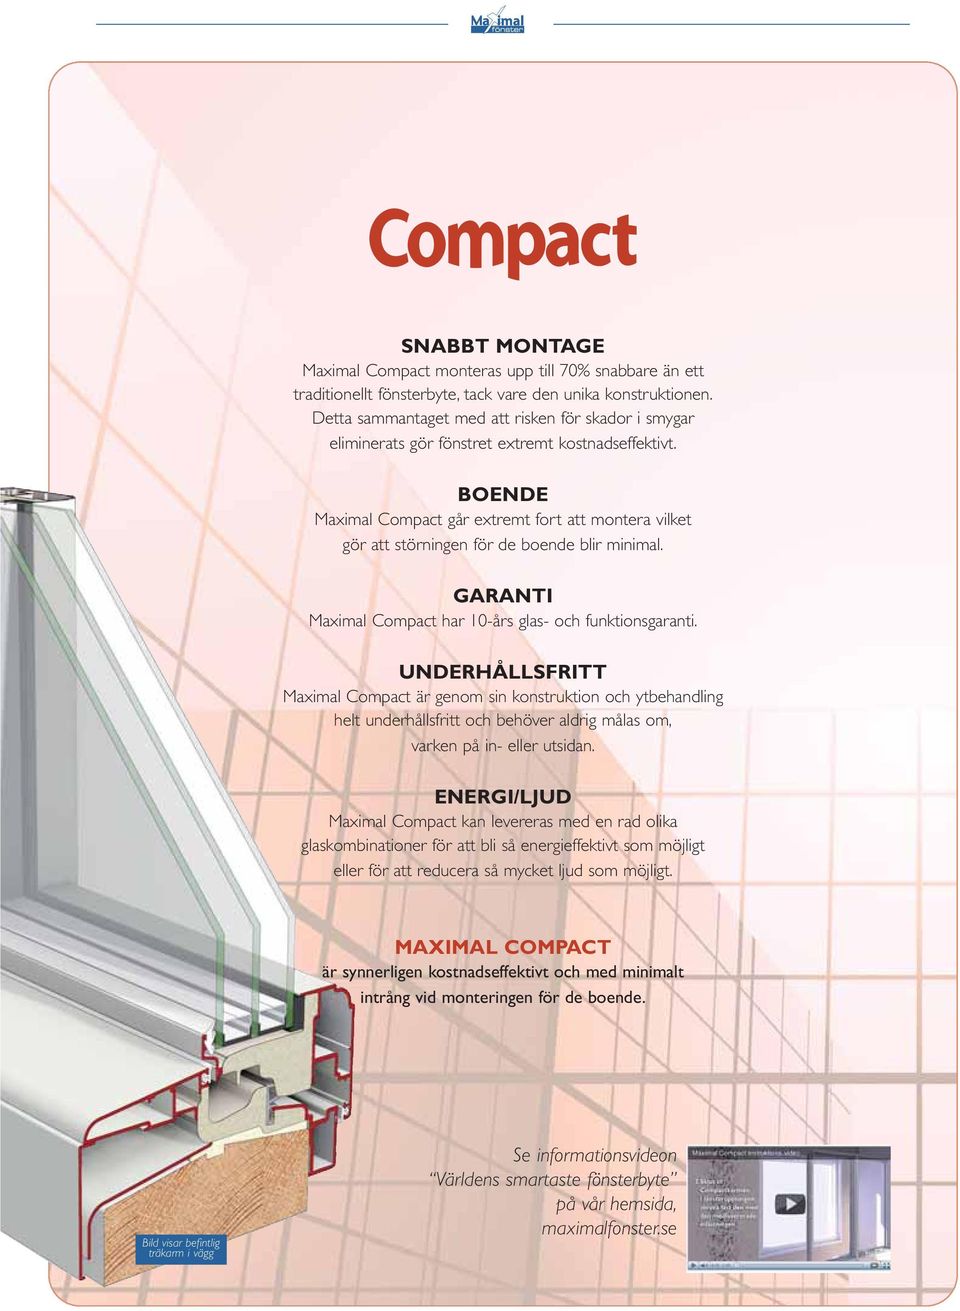 BOENDE Maximal Compact går extremt fort att montera vilket gör att störningen för de boende blir minimal. GARANTI Maximal Compact har 10-års glas- och funktionsgaranti.